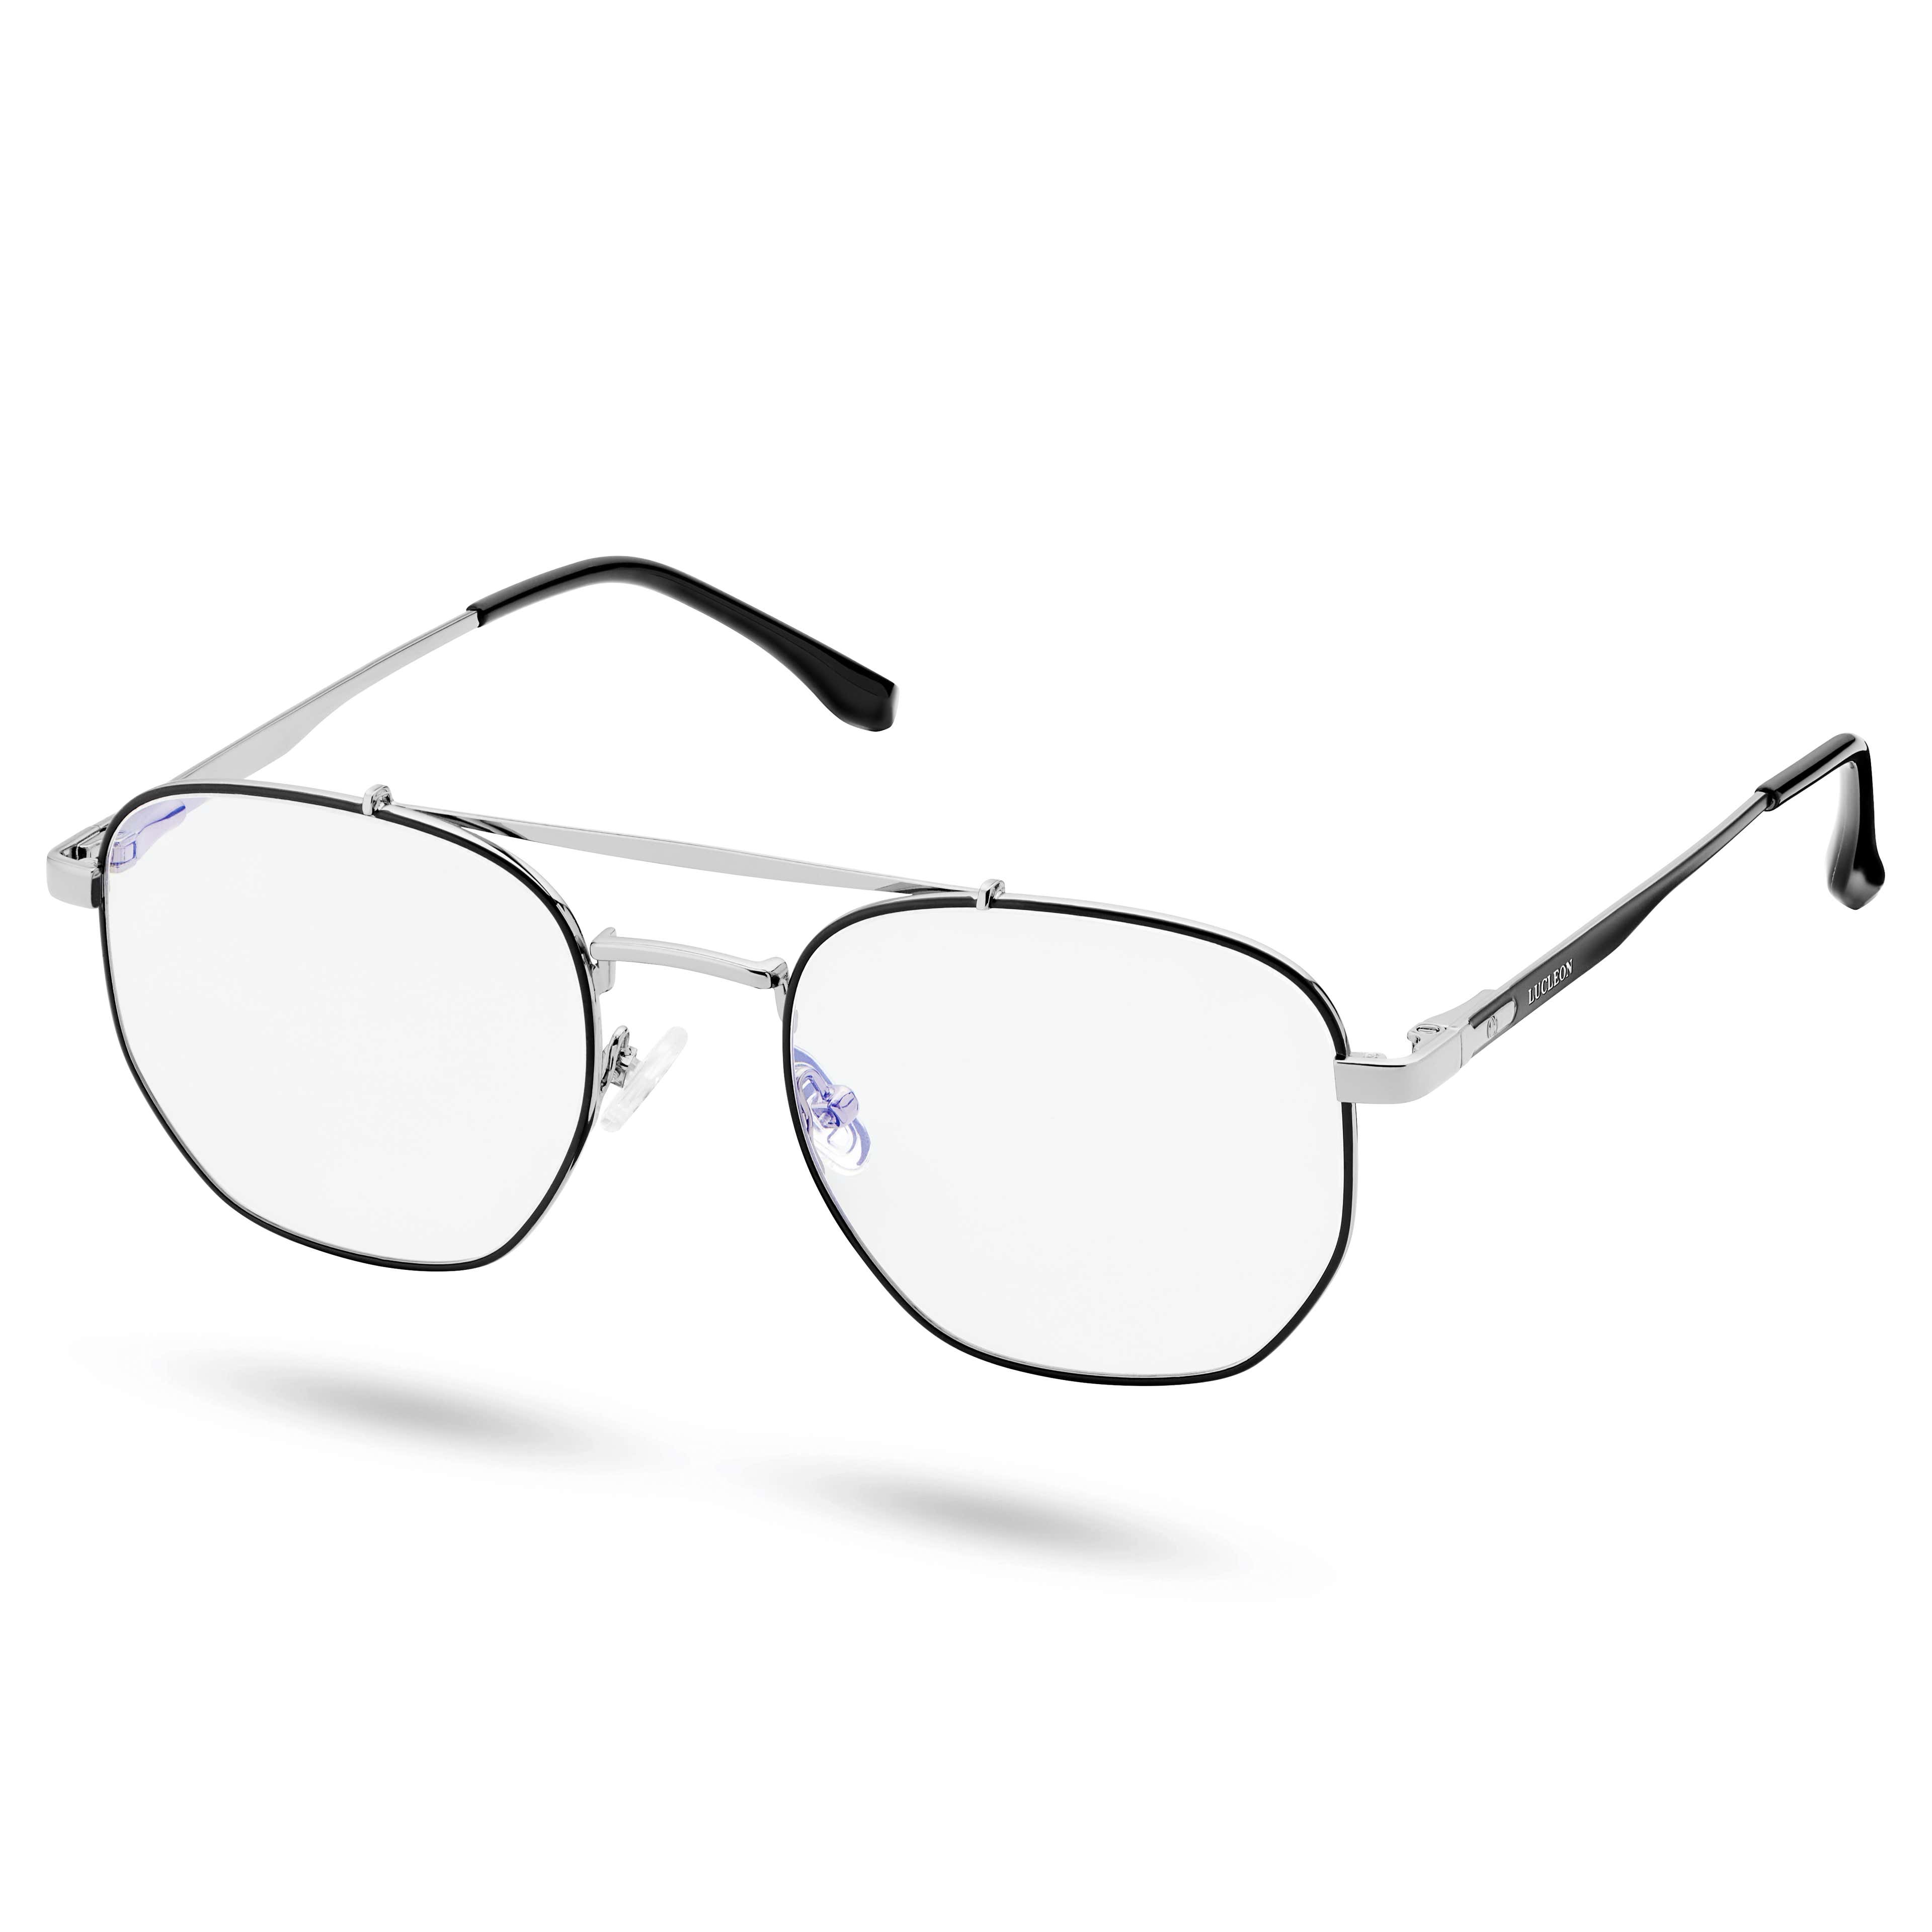 Stalowo-czarne prostokątne okulary aviator z soczewkami blokującymi niebieskie światło